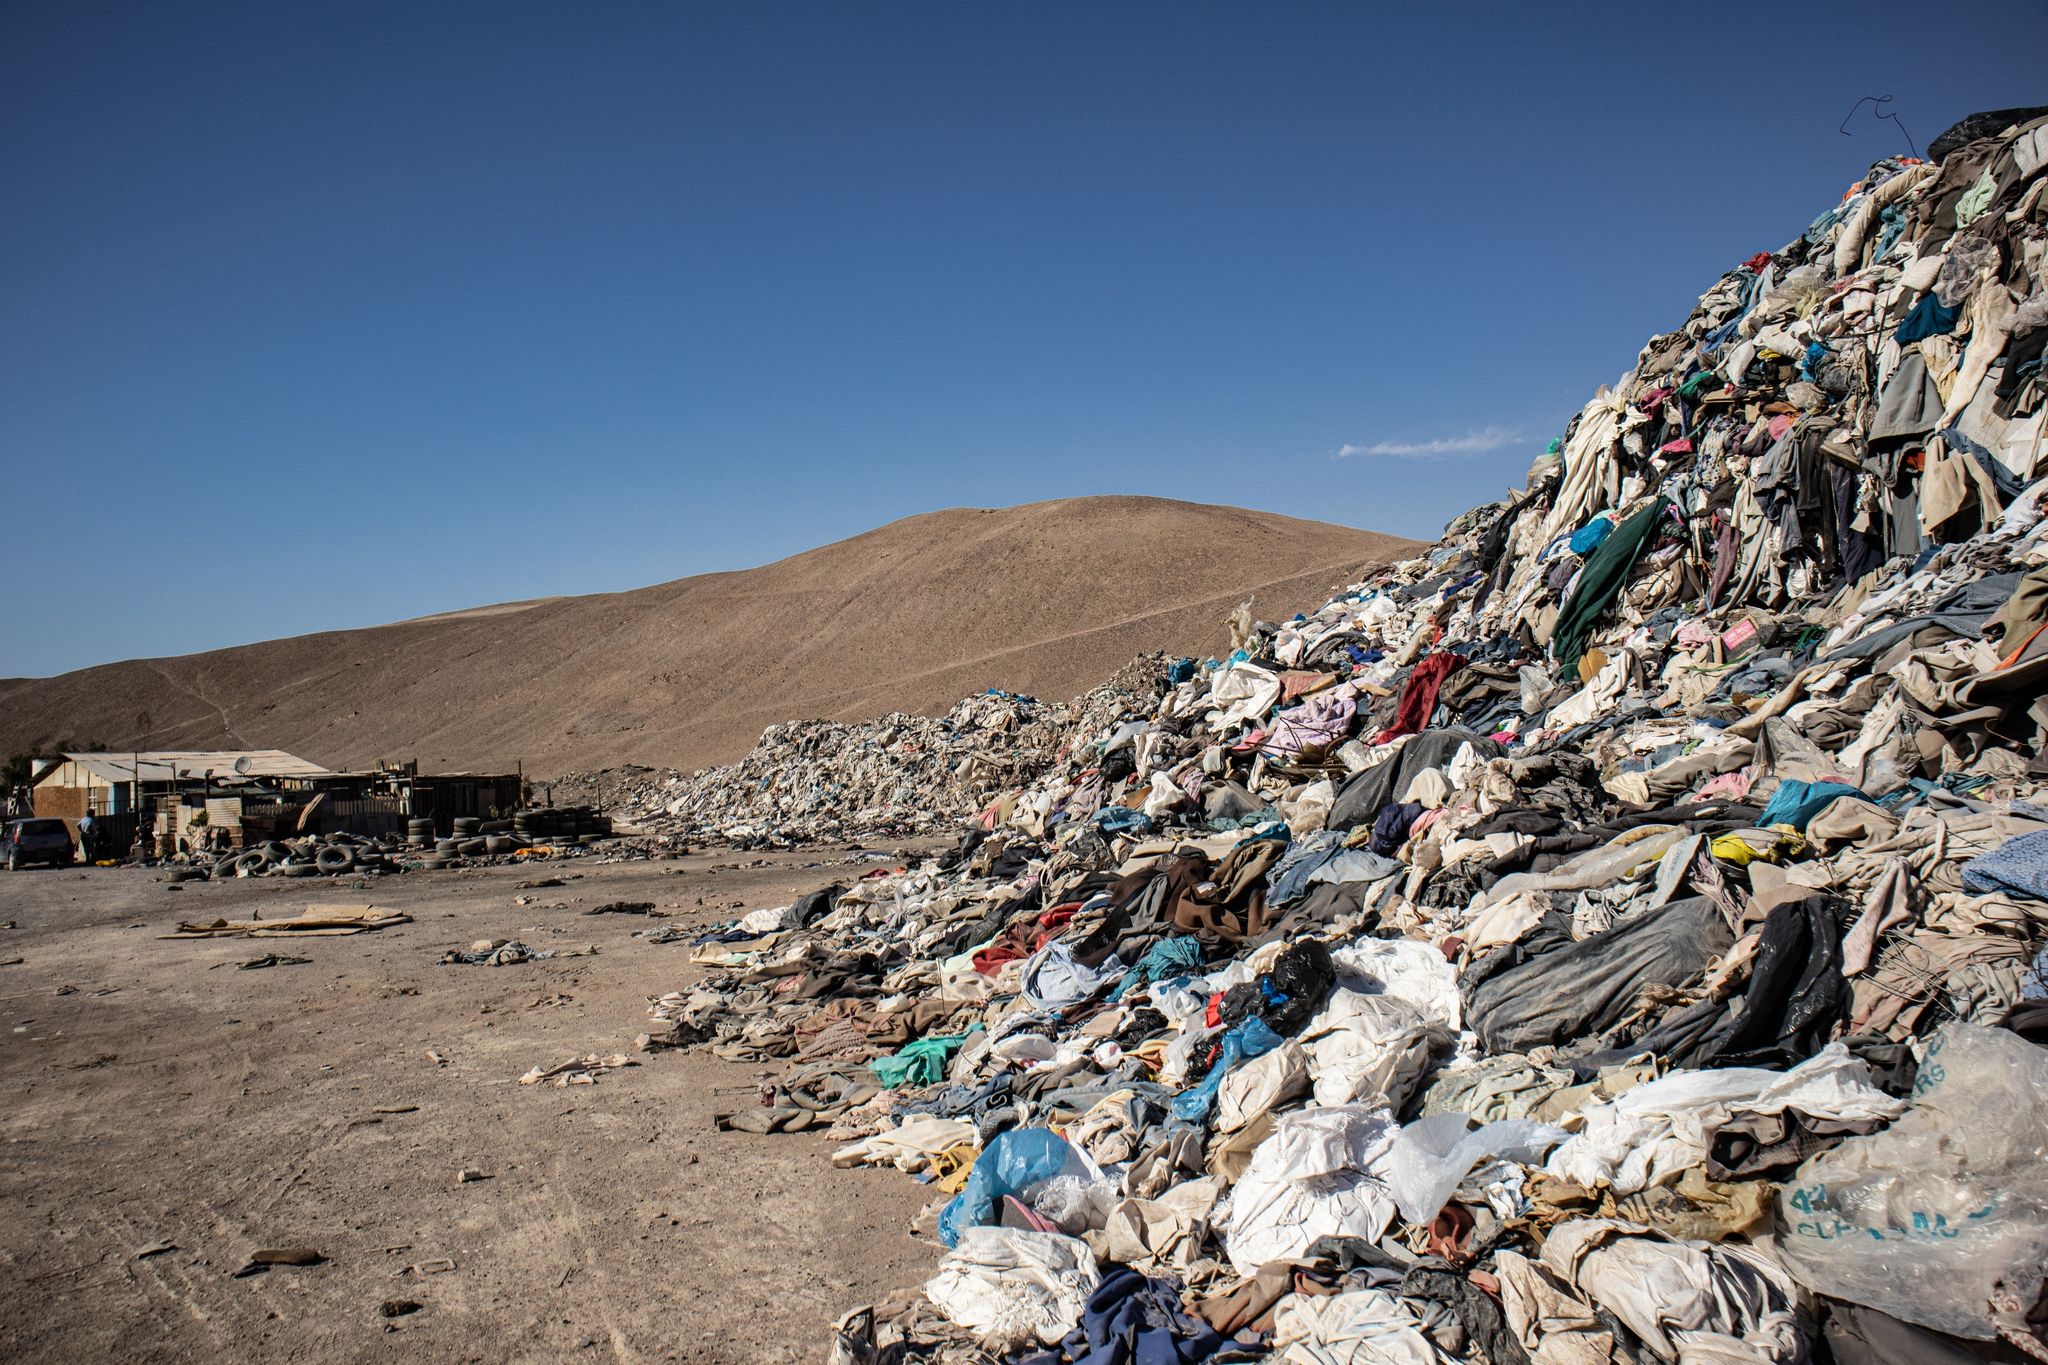 Gebrauchte Kleidungsstücke liegen in einer Müll-Deponie in der Wüste.